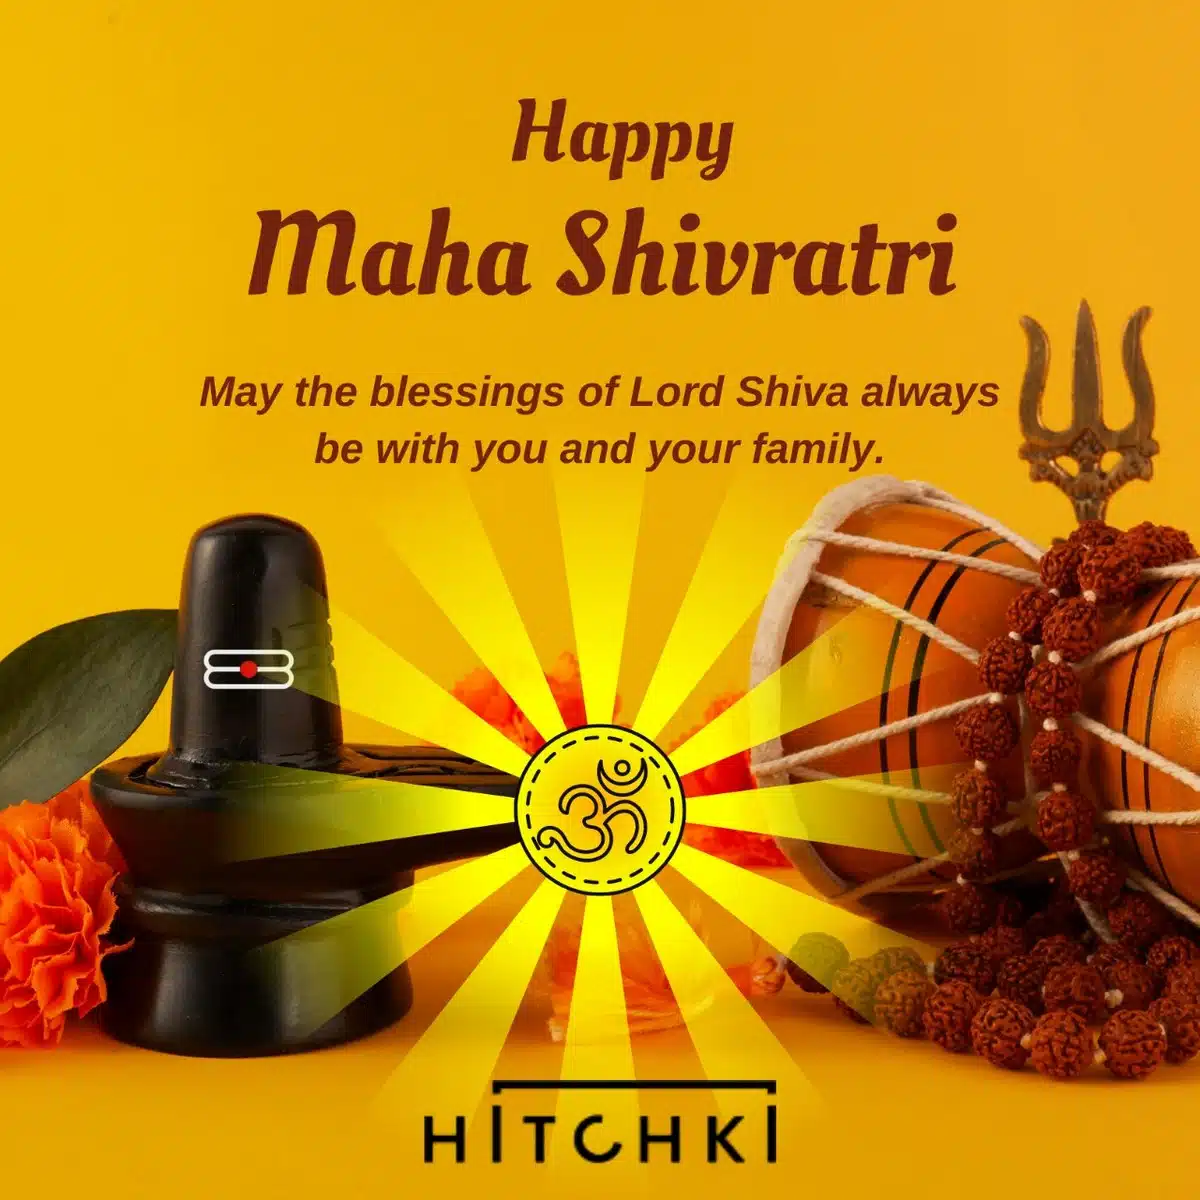 Wishing You A Very Happy Mahashivaratri